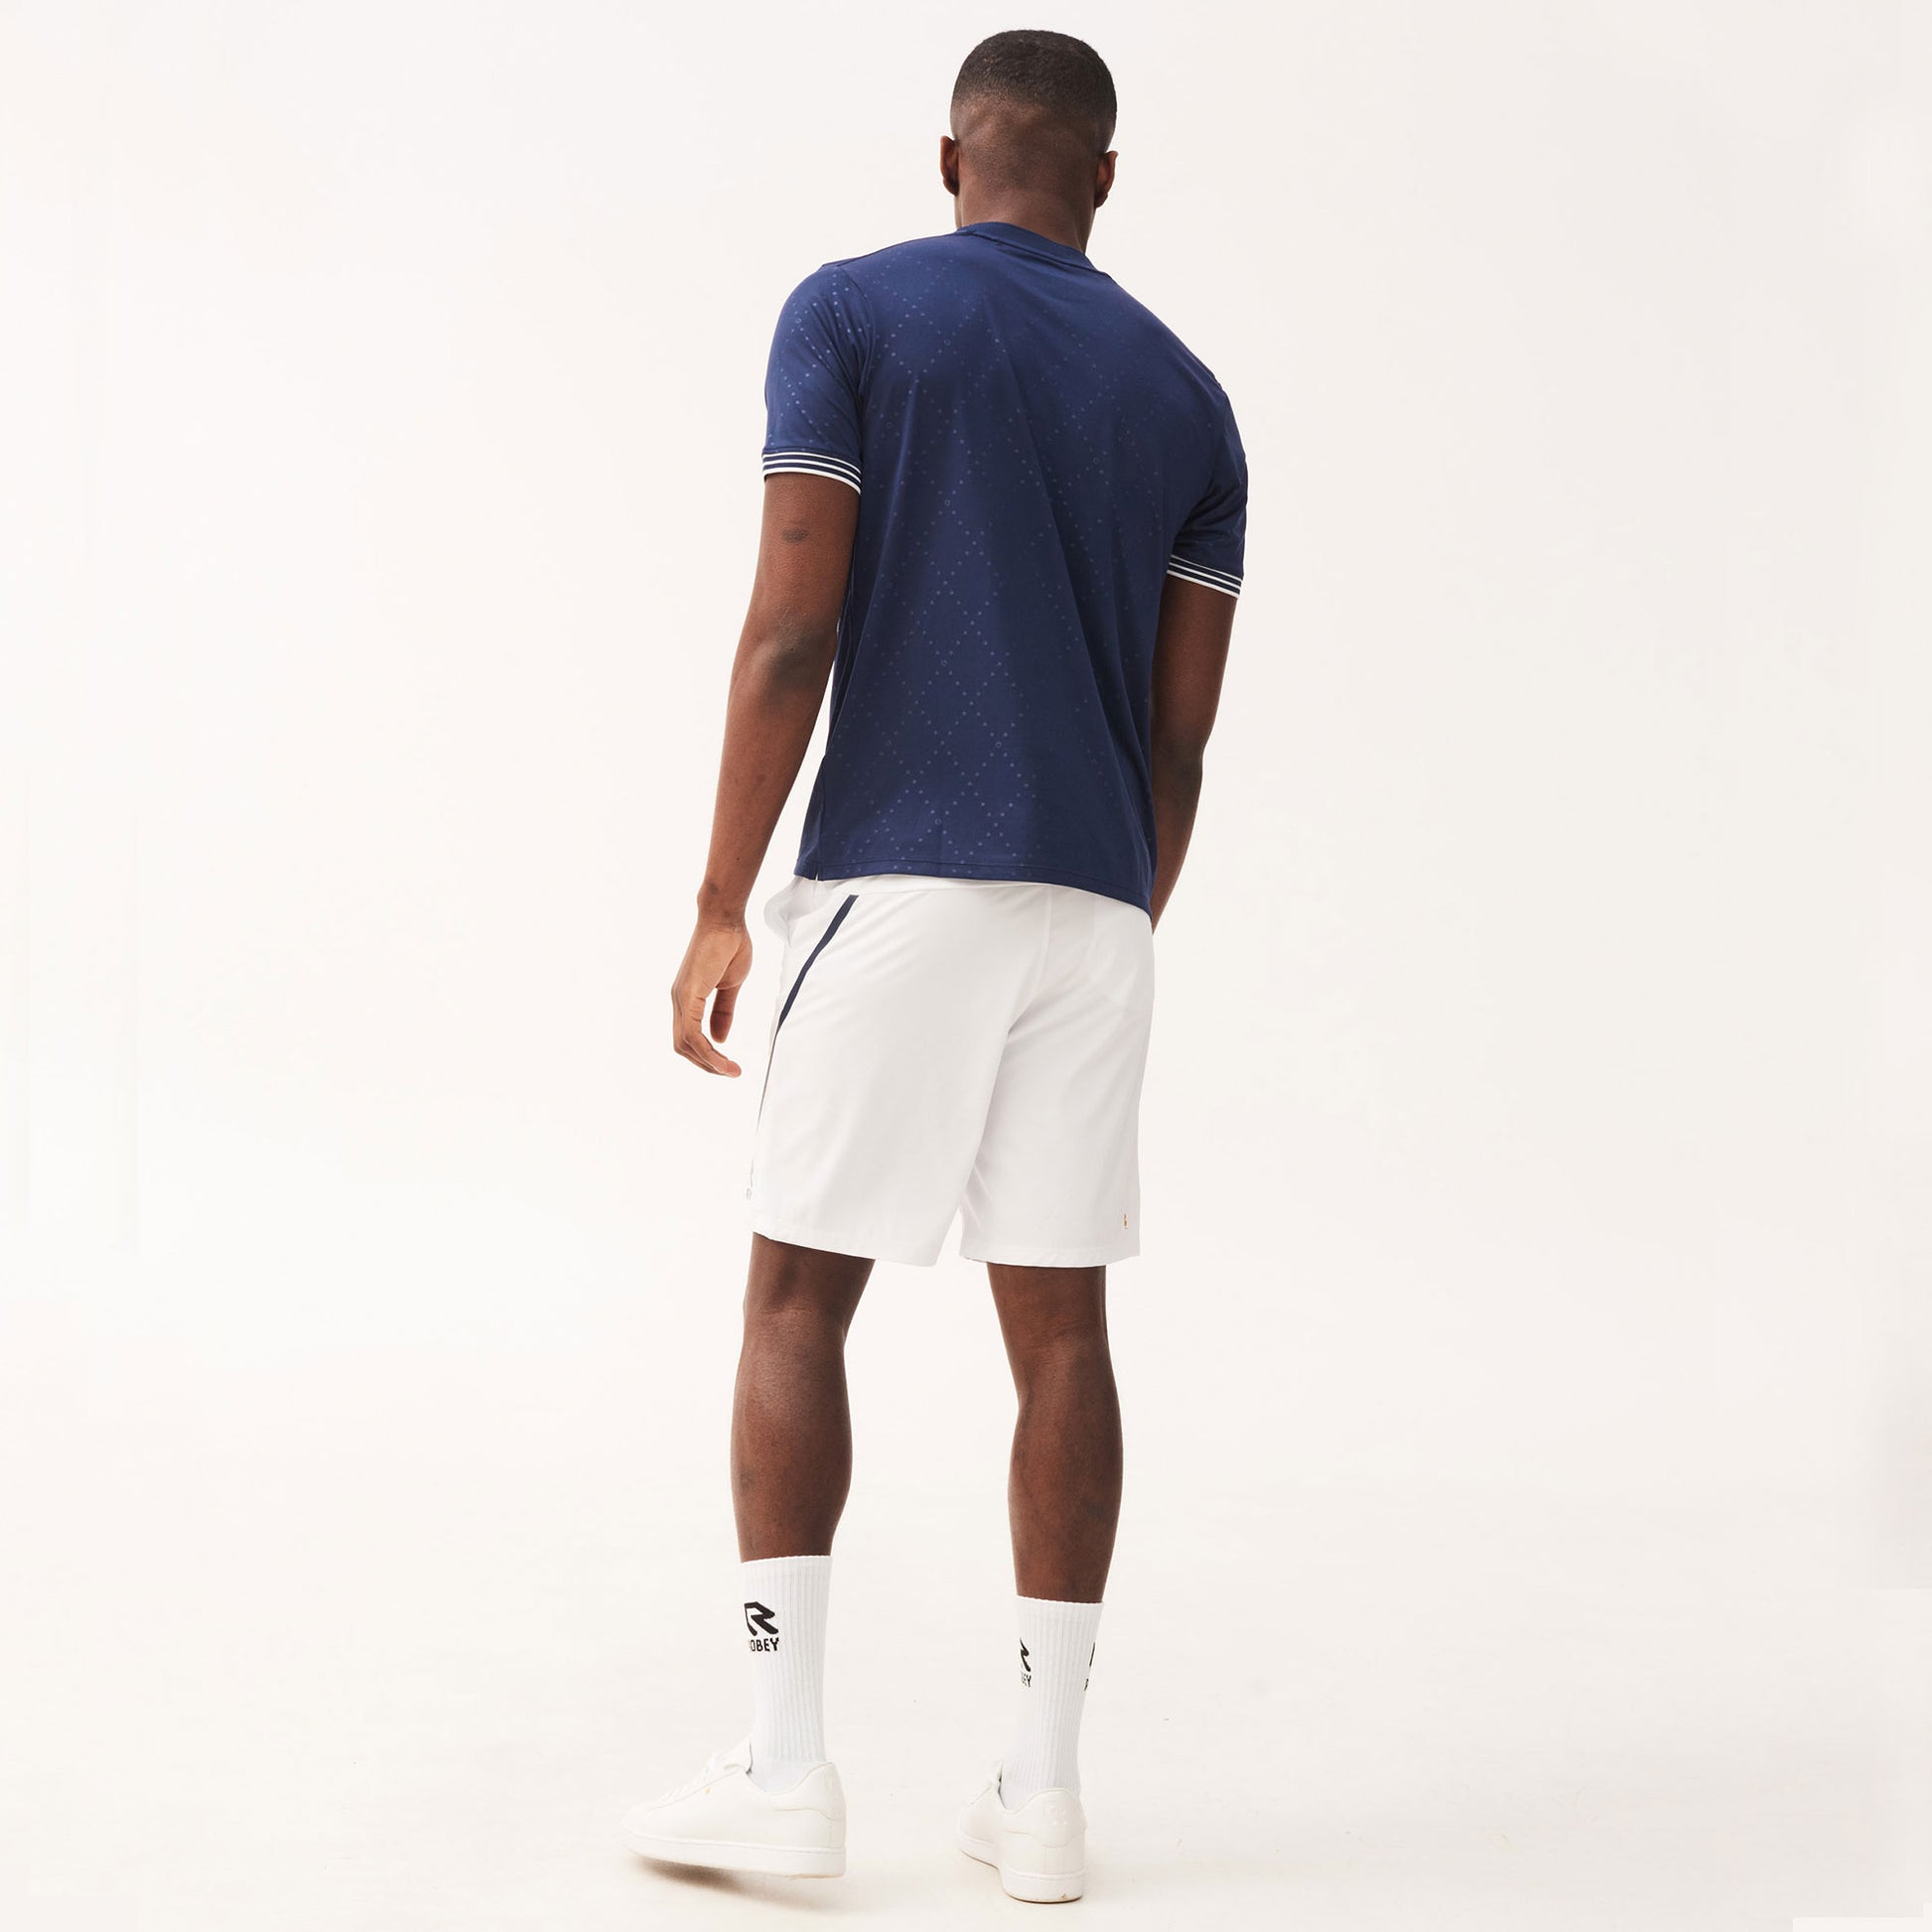 Robey Grip Men's 9-Inch Tennis Shorts White/Dark Blue (4)